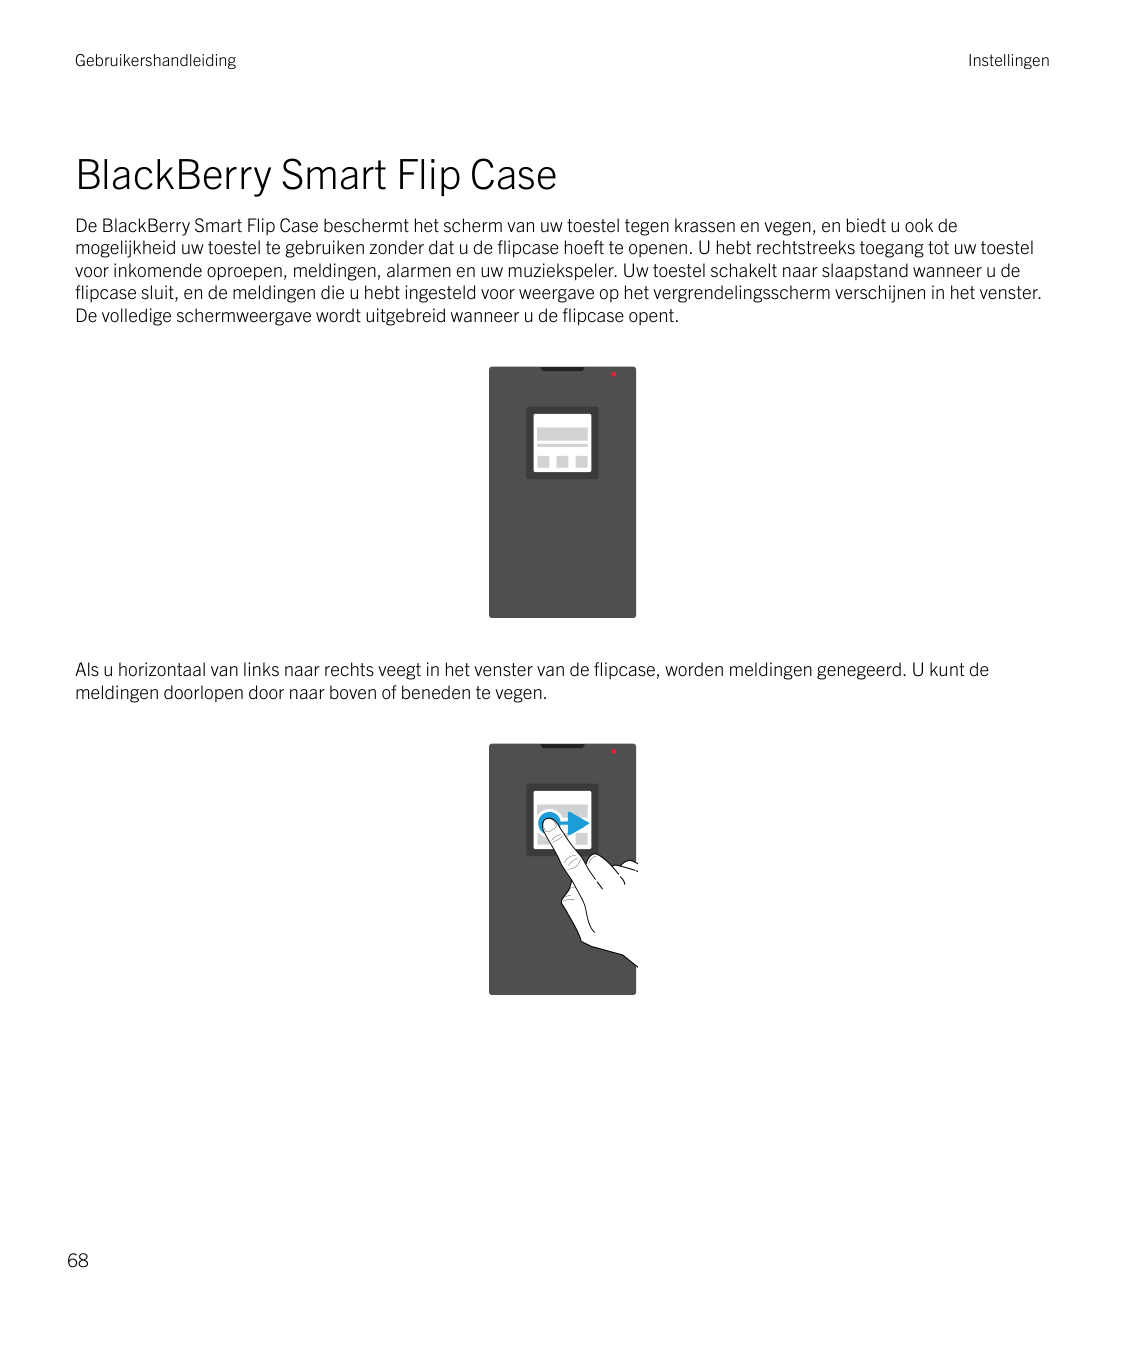 GebruikershandleidingInstellingenBlackBerry Smart Flip CaseDe BlackBerry Smart Flip Case beschermt het scherm van uw toestel teg